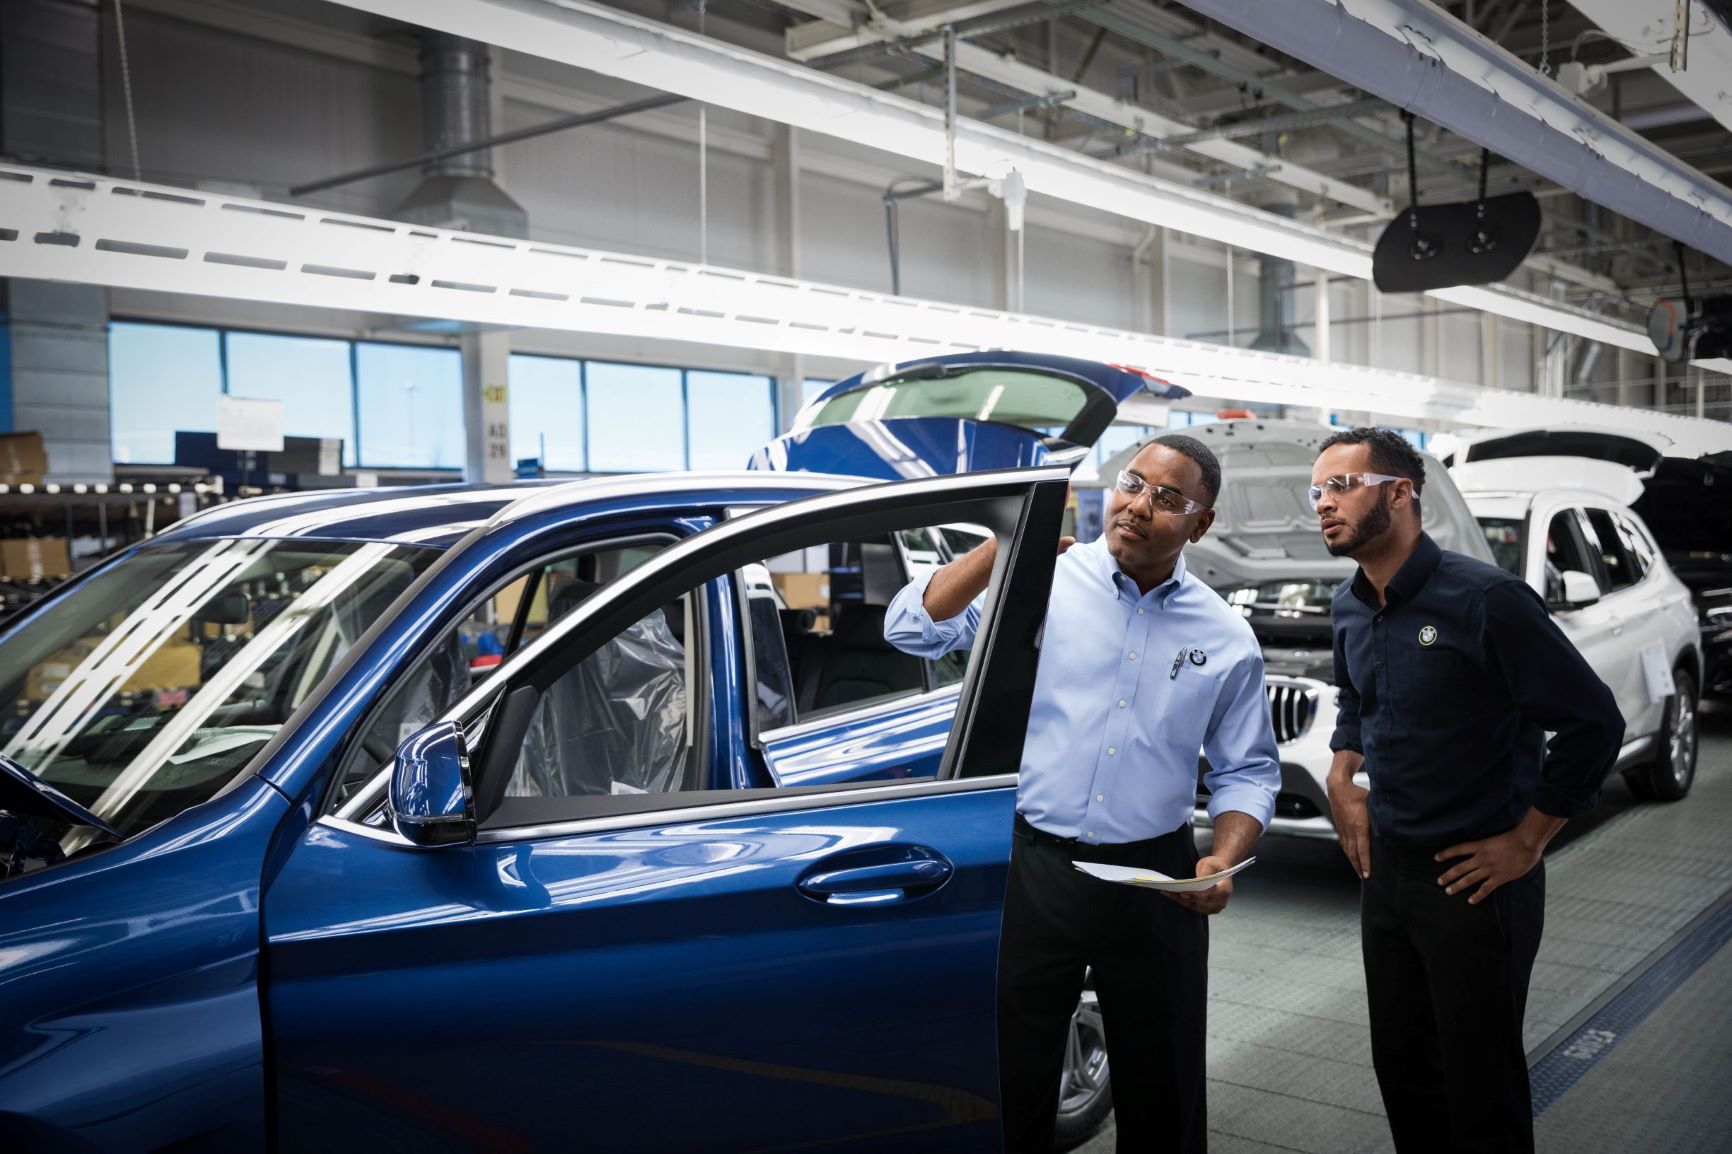 Dos responsables de calidad de BMW están inspeccionando un coche.